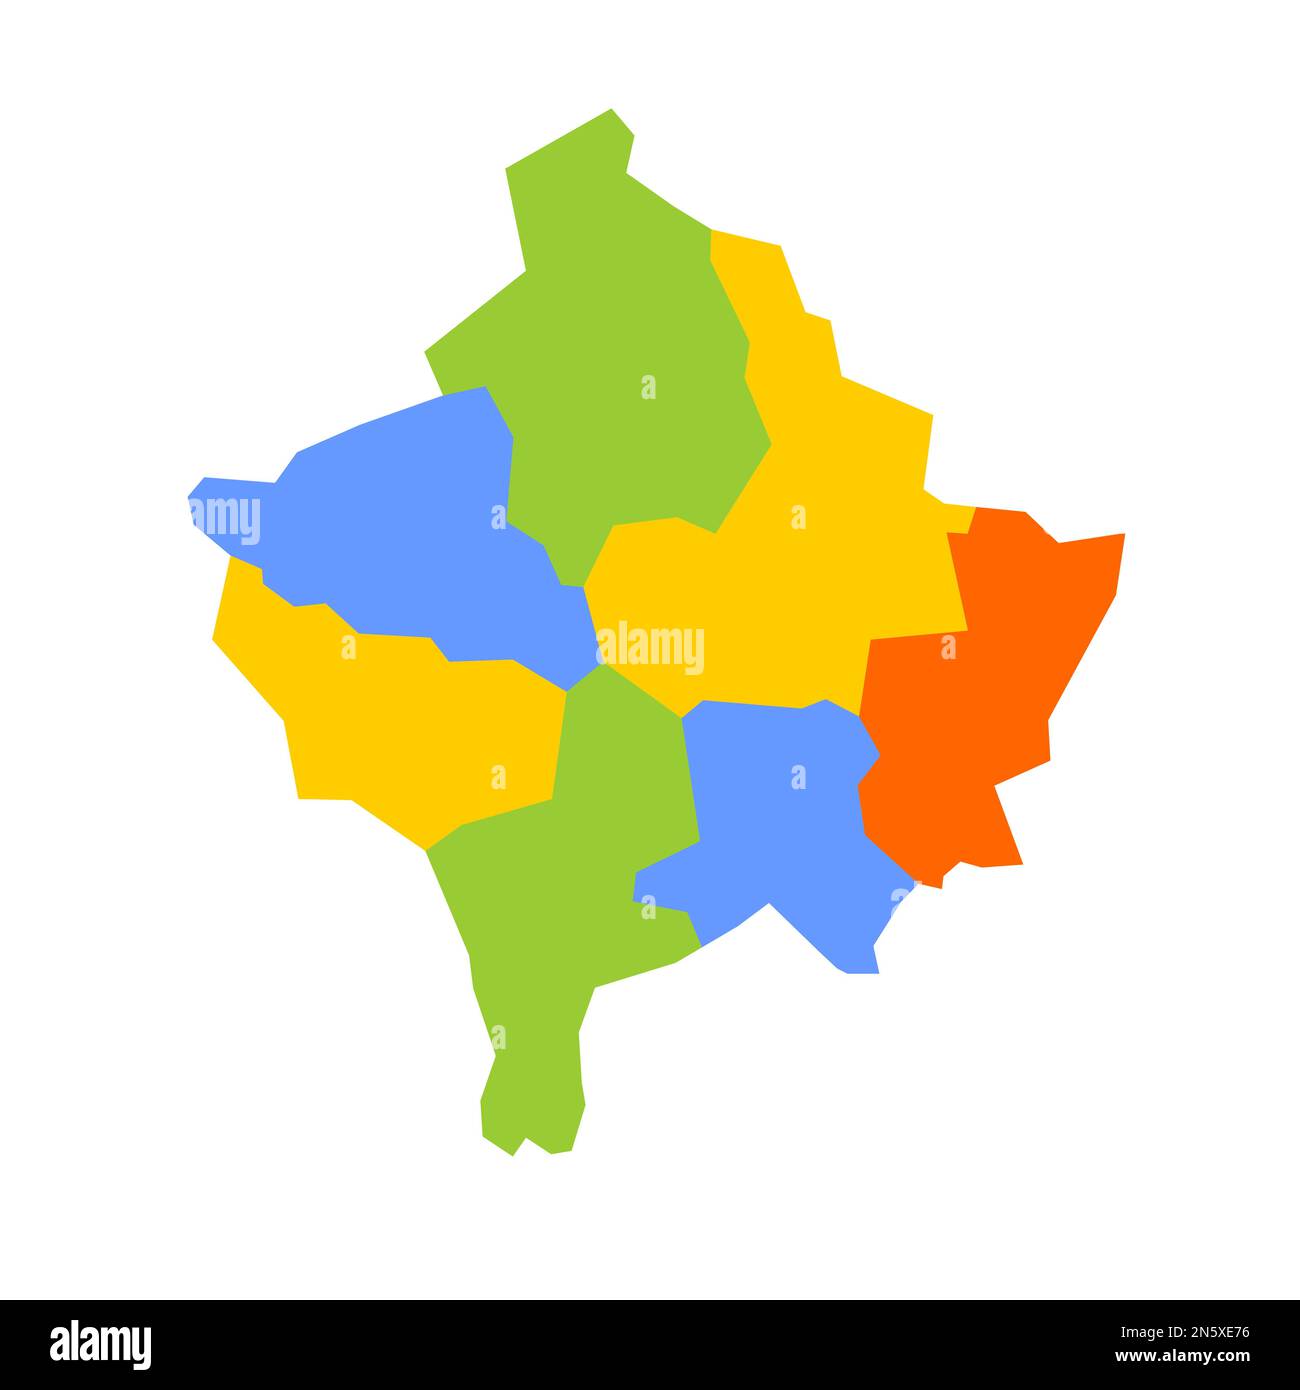 Mappa politica del Kosovo delle divisioni amministrative - distretti. Mappa vettoriale colorata vuota. Illustrazione Vettoriale